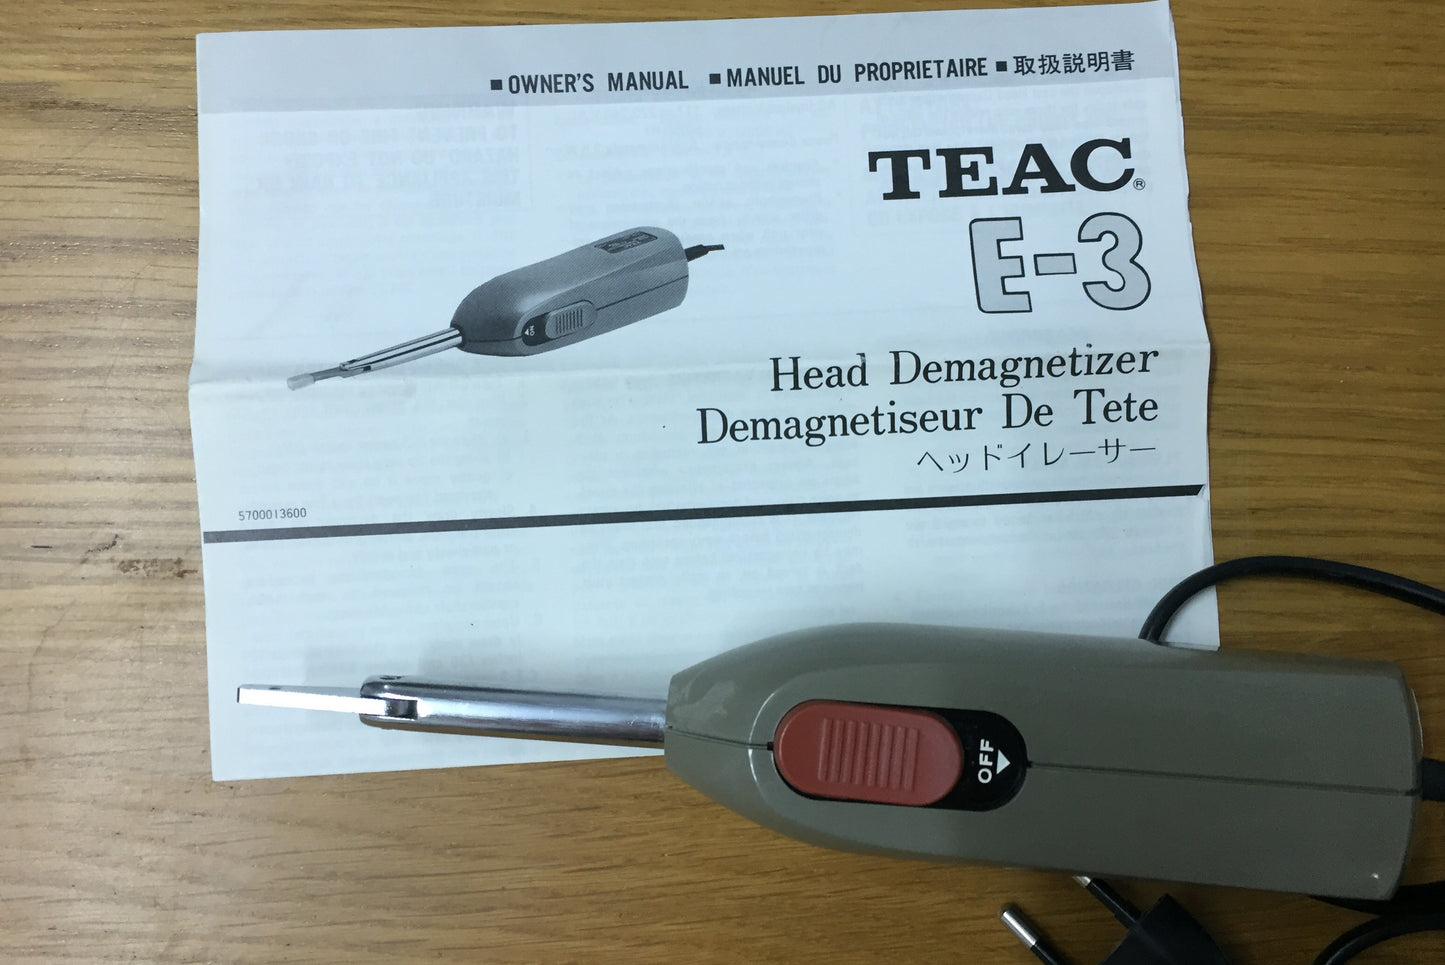 TEAC E-3 Head demagnetizer